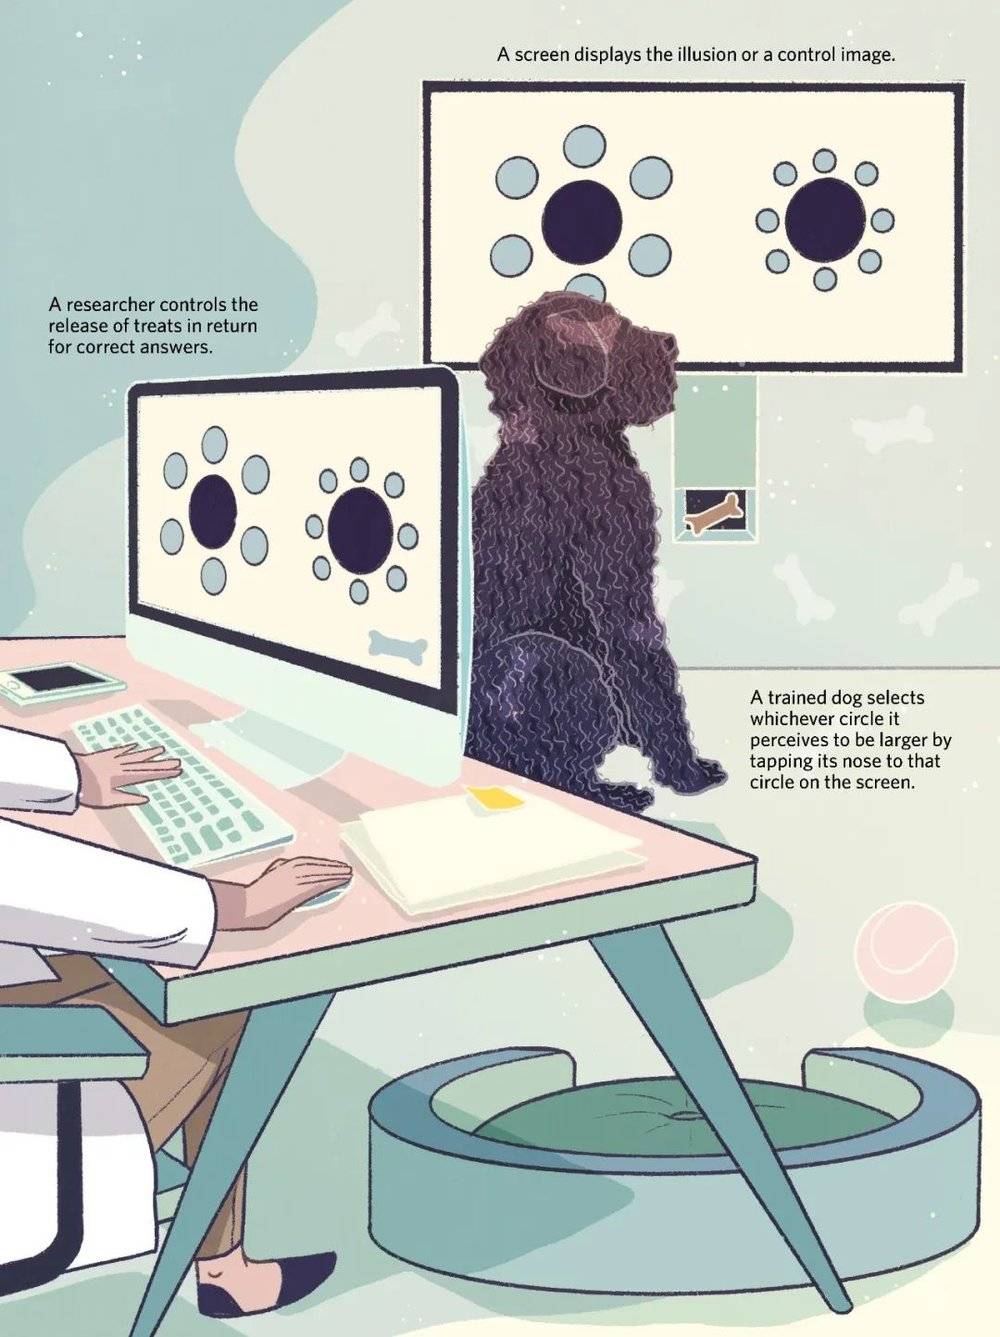 在2016年，萨拉·比索耶和她在澳大利亚拉筹伯大学的同事发表了一项实验，其中使用了上图中的装置。他们训练狗狗选择看上去更大的黑圆，并发现这些狗狗都一致选择了被较大的蓝圆环绕的黑圆。这个效果与在人类身上看到的恰恰相反，说明狗和人的视觉感知可能在这个错觉的某些方面存在差异。KAILEY WHITMAN